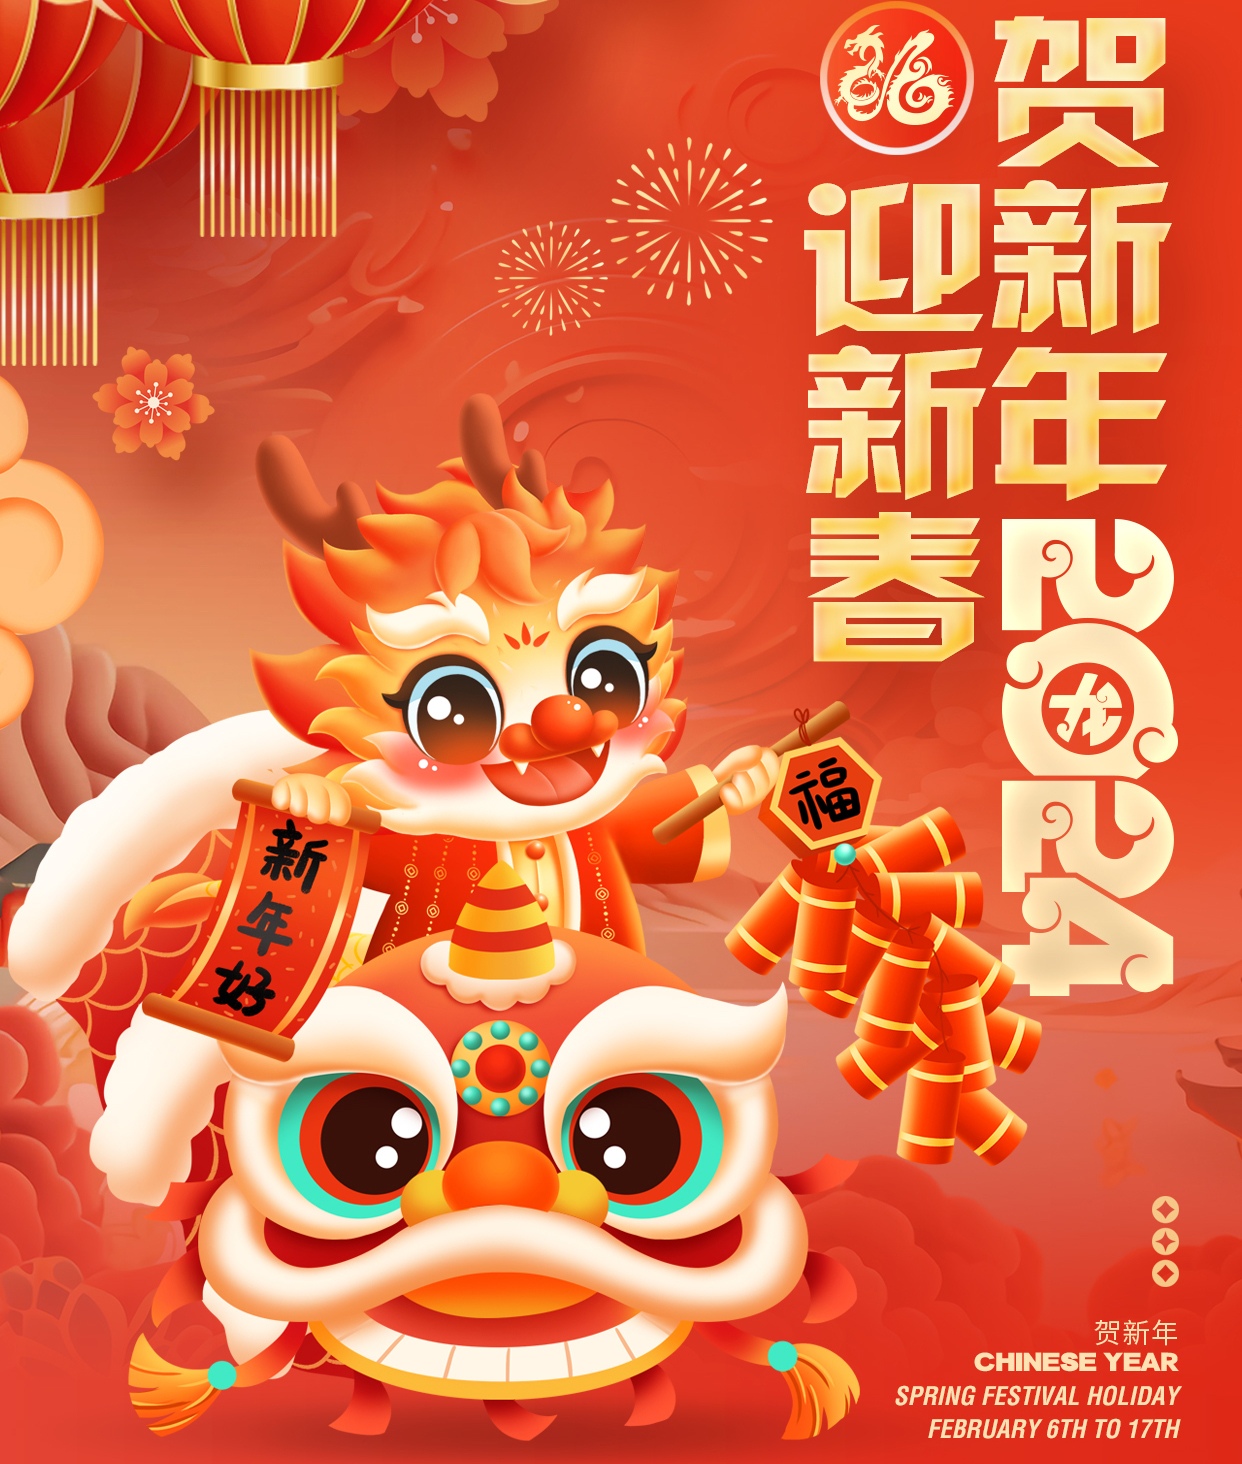 Happy Chinese Year